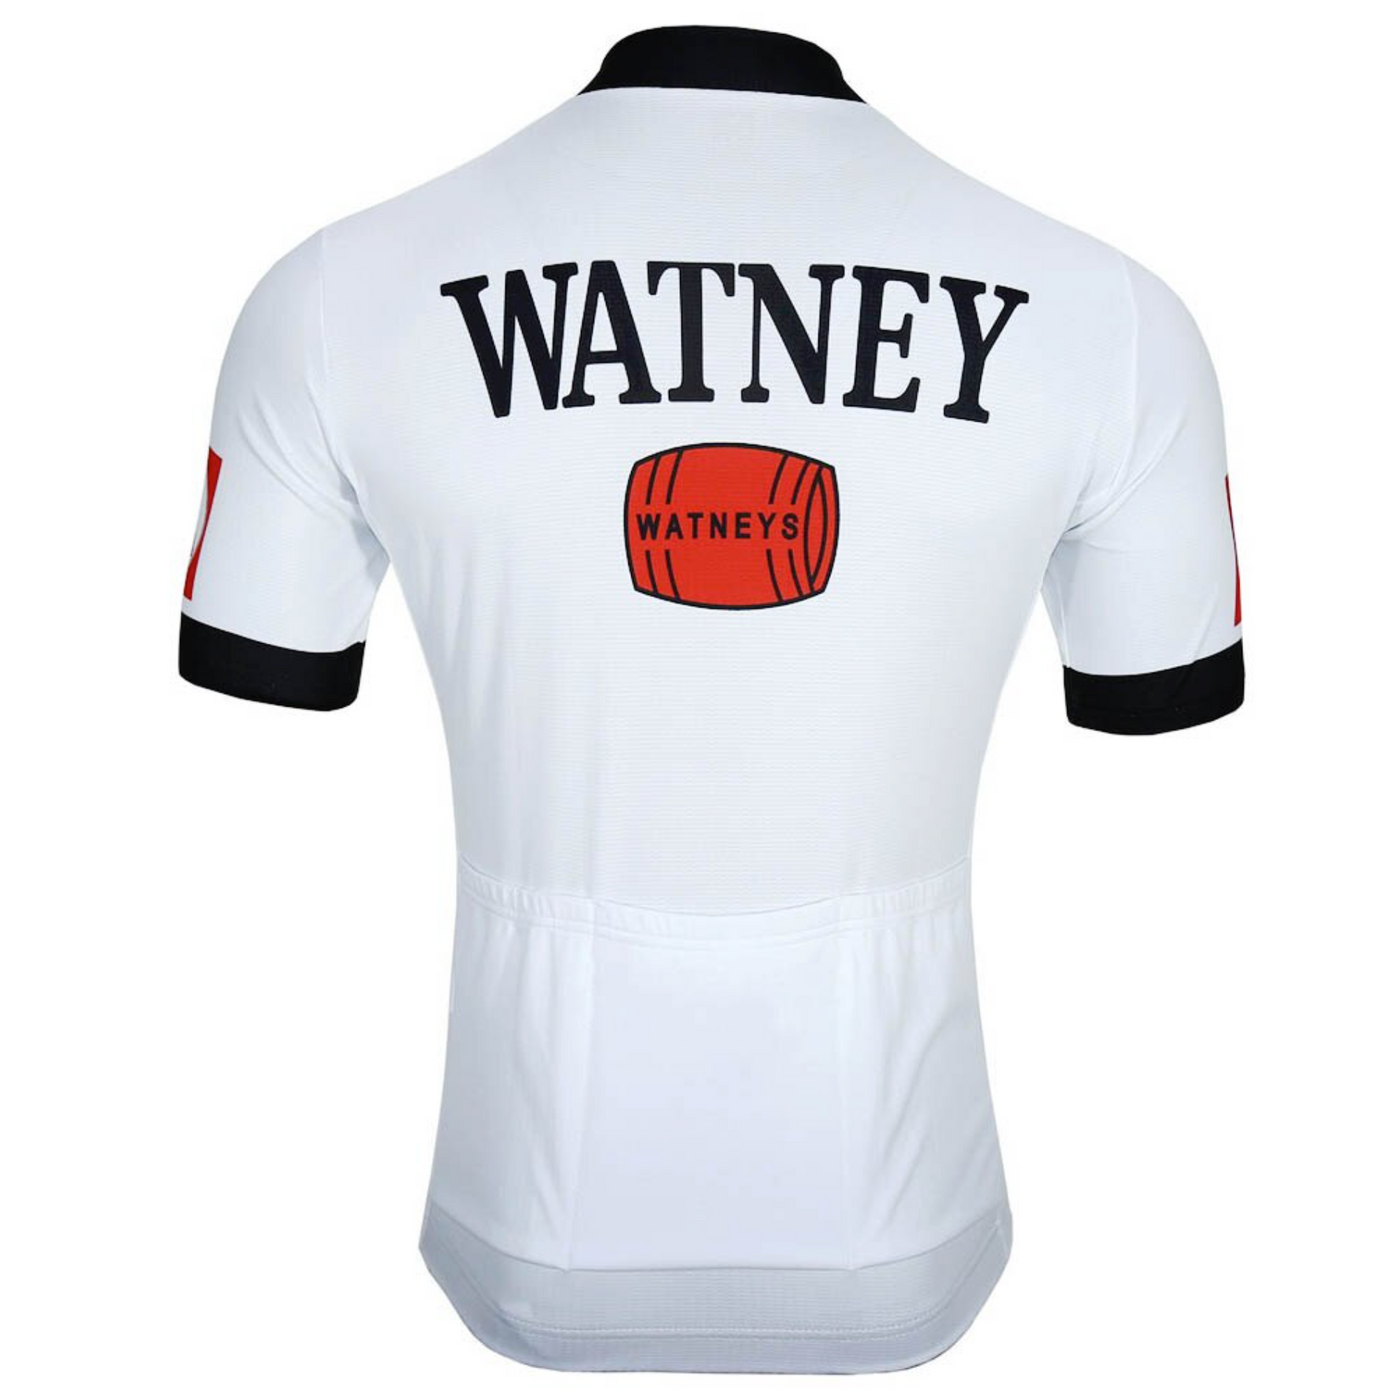 Watney Jersey Short Sleeve